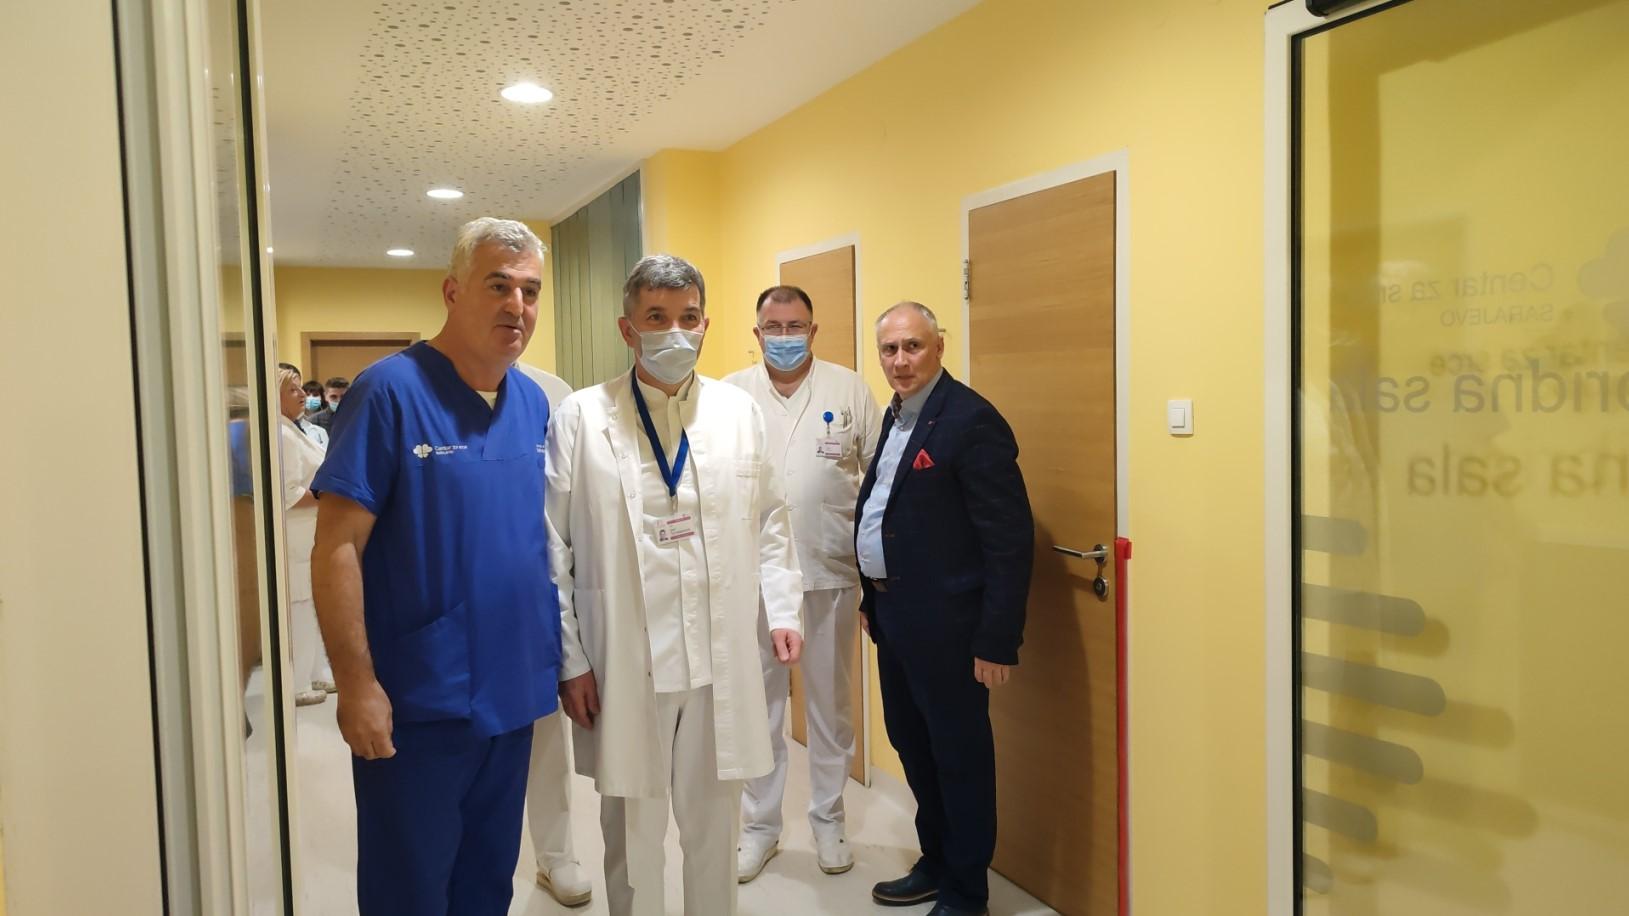 Hibridnu salu u Centru za srce svečano su otvorili prof. dr. Mirsad Kacila i ministar zdravstva KS Haris Vranić - Avaz